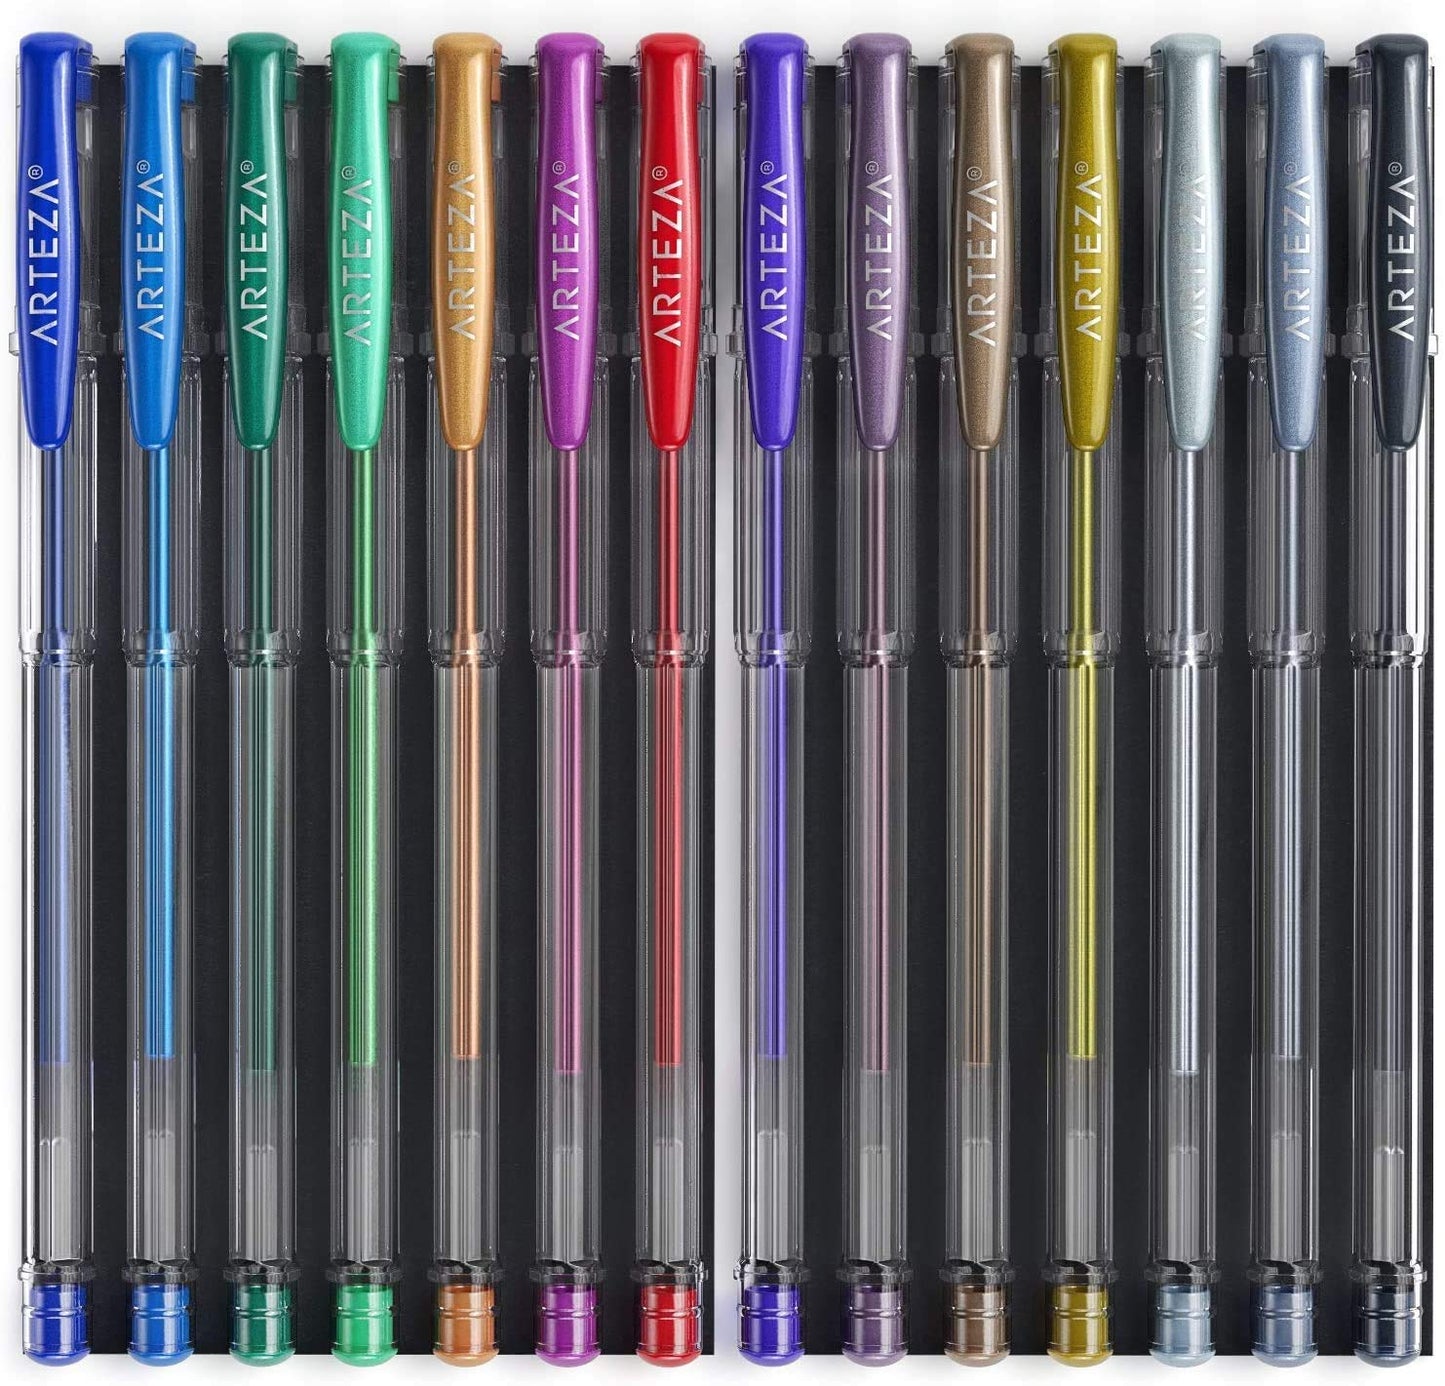 Arteza Metallic Gel Ink Pens - Set of 14